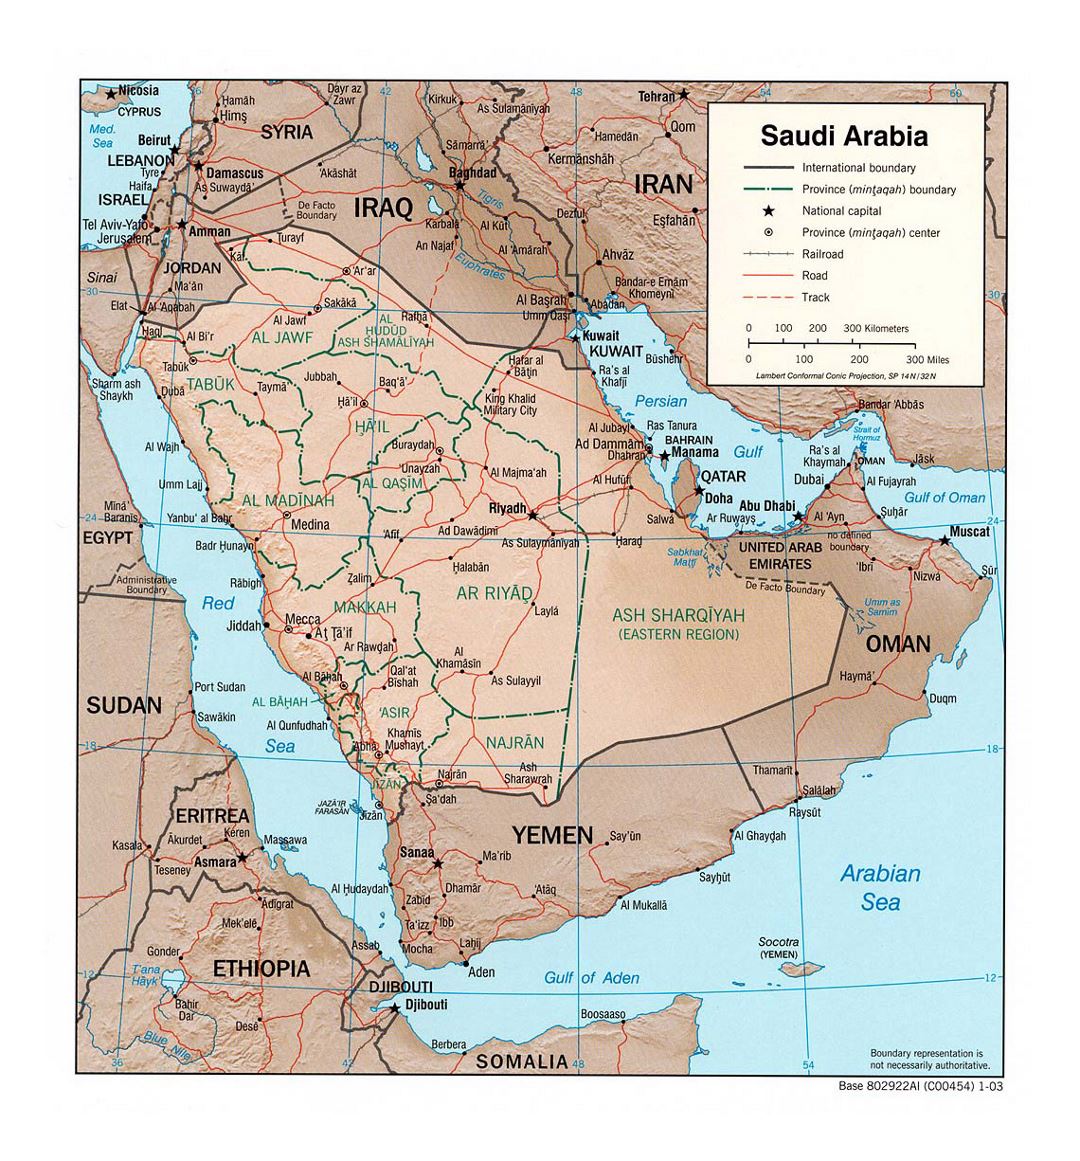 Detallado mapa político y administrativo de Arabia Saudita con relieve, carreteras, ferrocarriles y principales ciudades - 2003